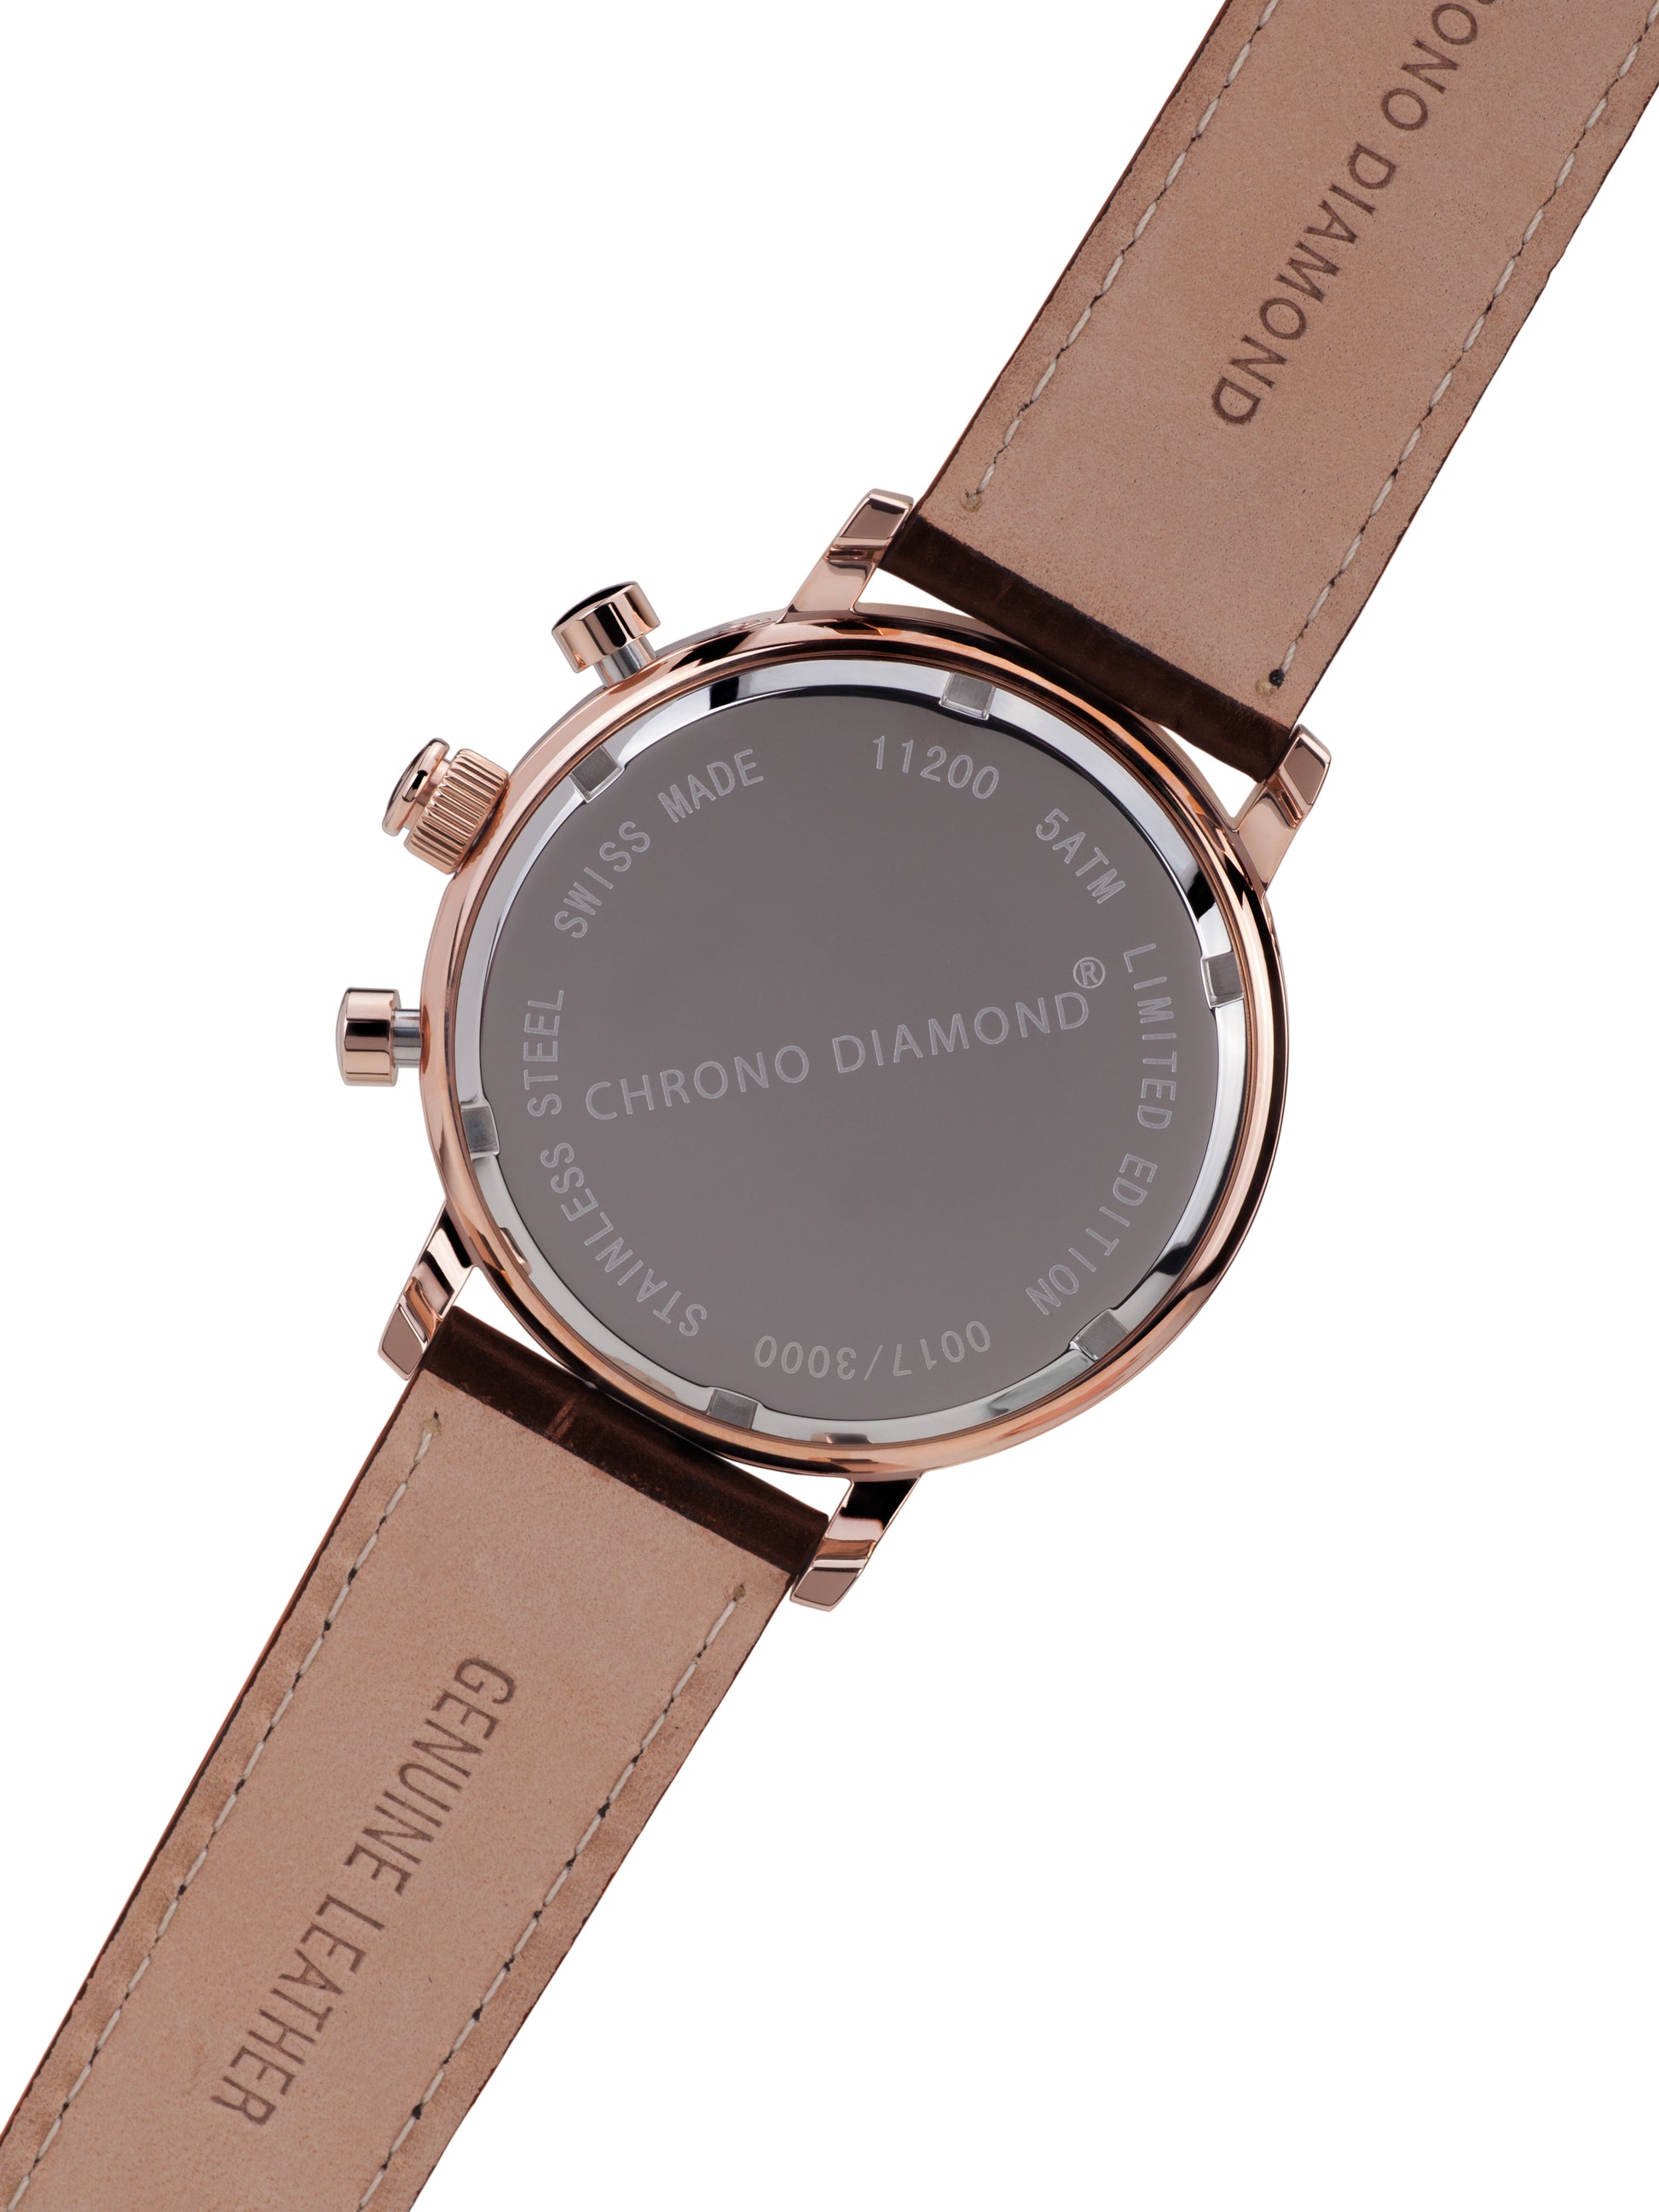 Automatic watches — Argos — Chrono Diamond — rosegold IP silver